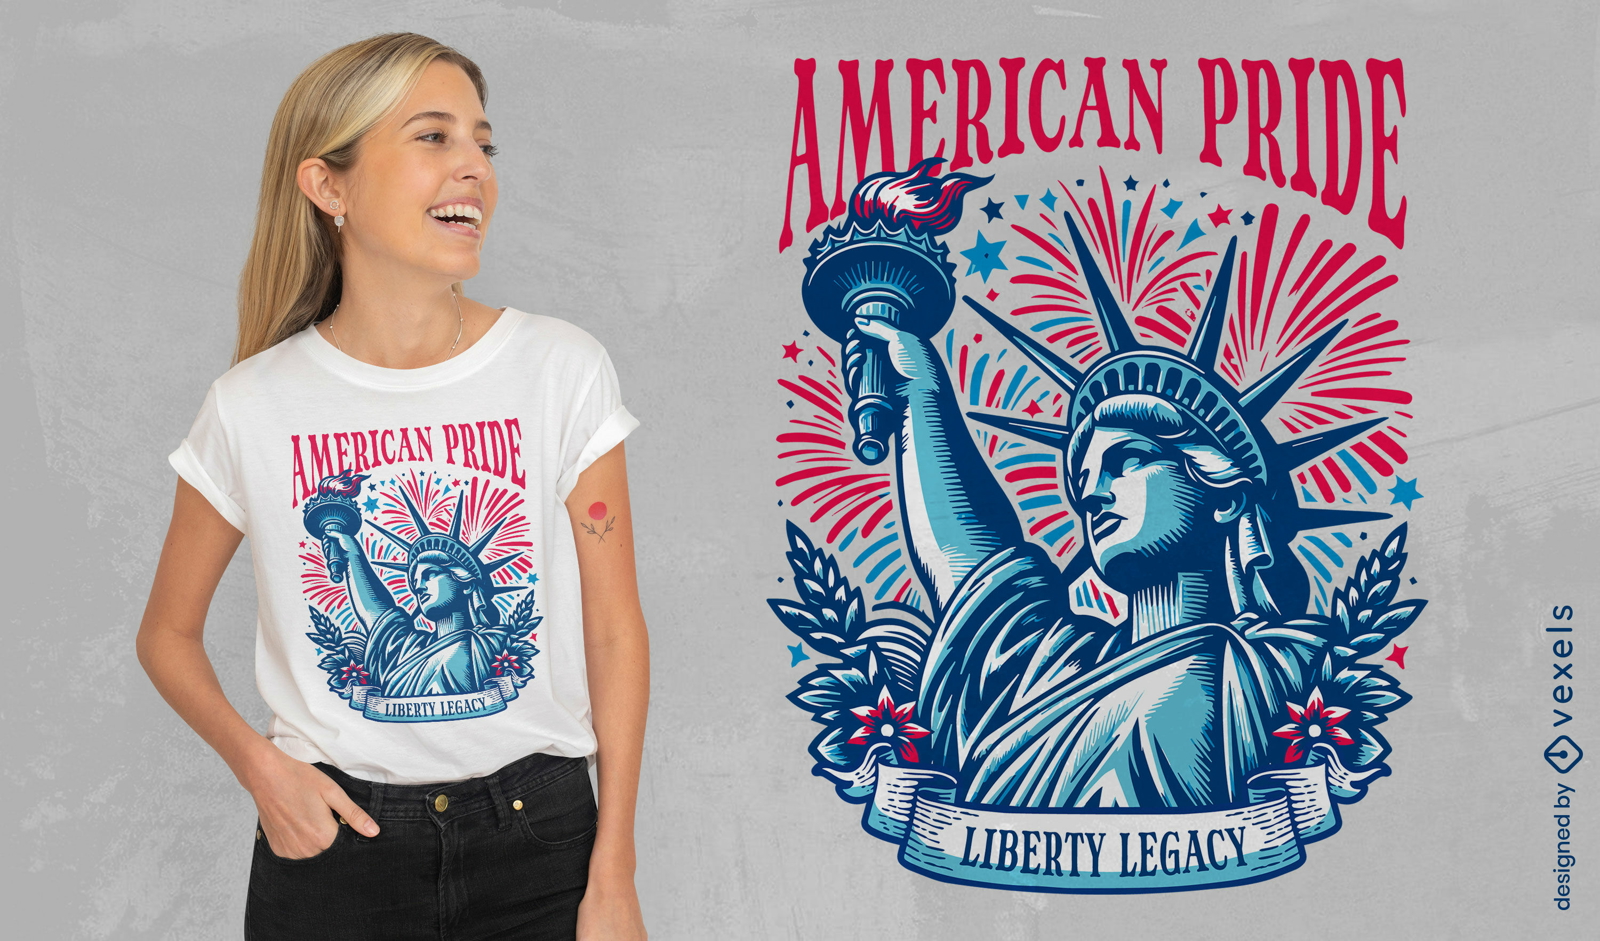 Diseño de camiseta de la Estatua de la Libertad y el Orgullo Americano.